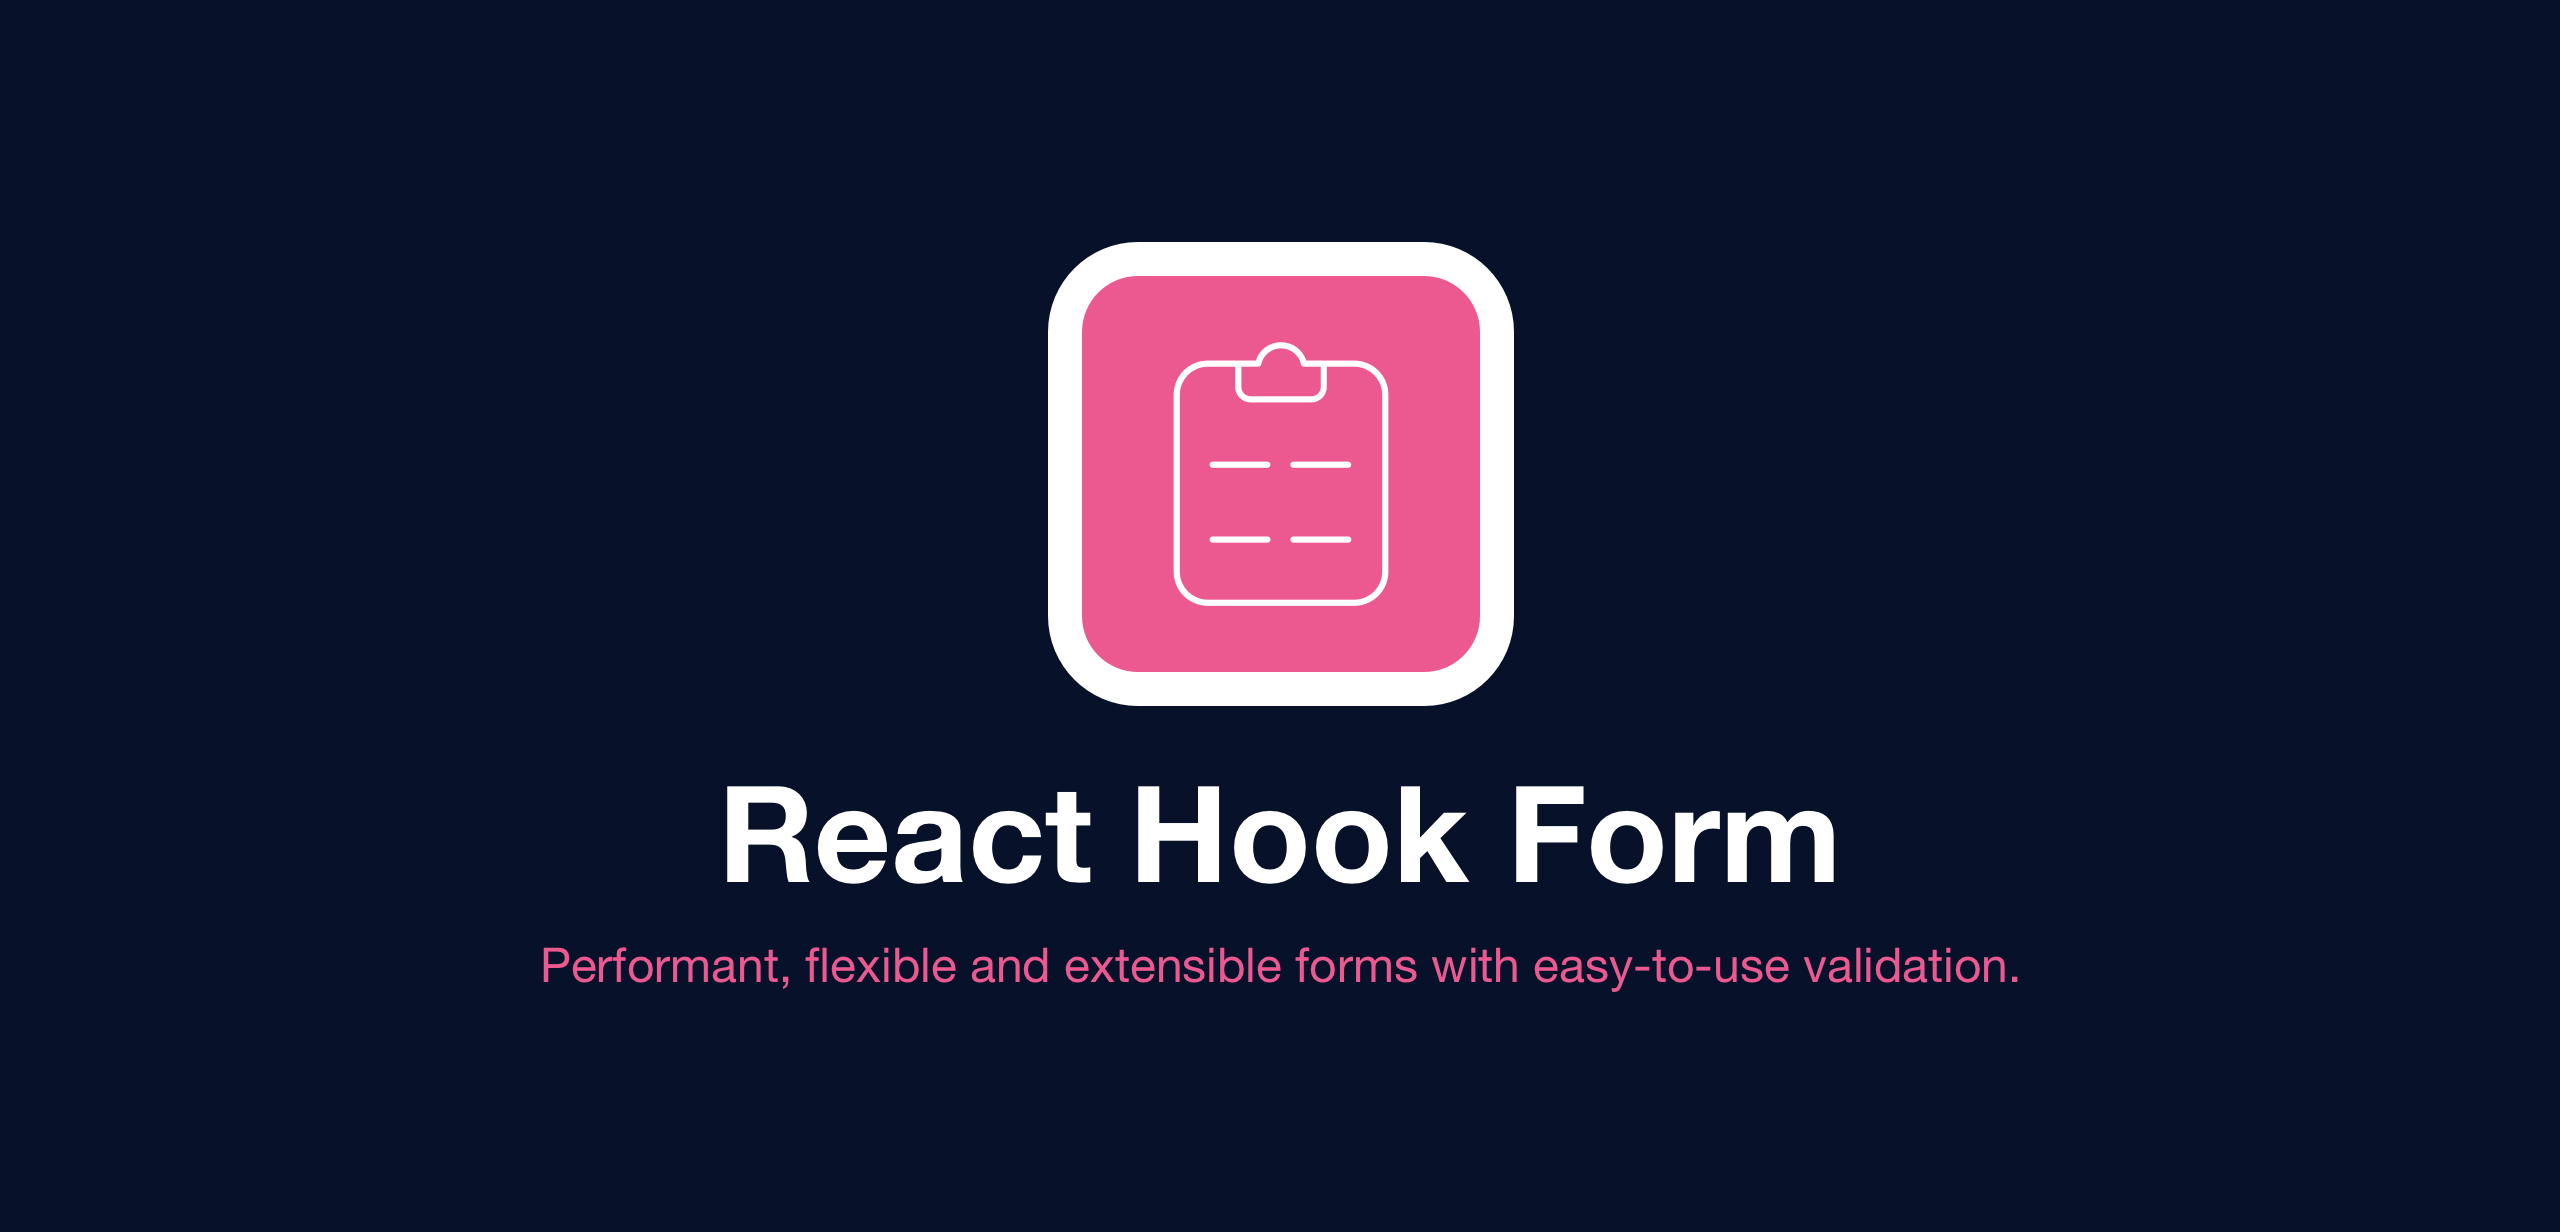 Xử lý validate đơn giản với React Hook Form